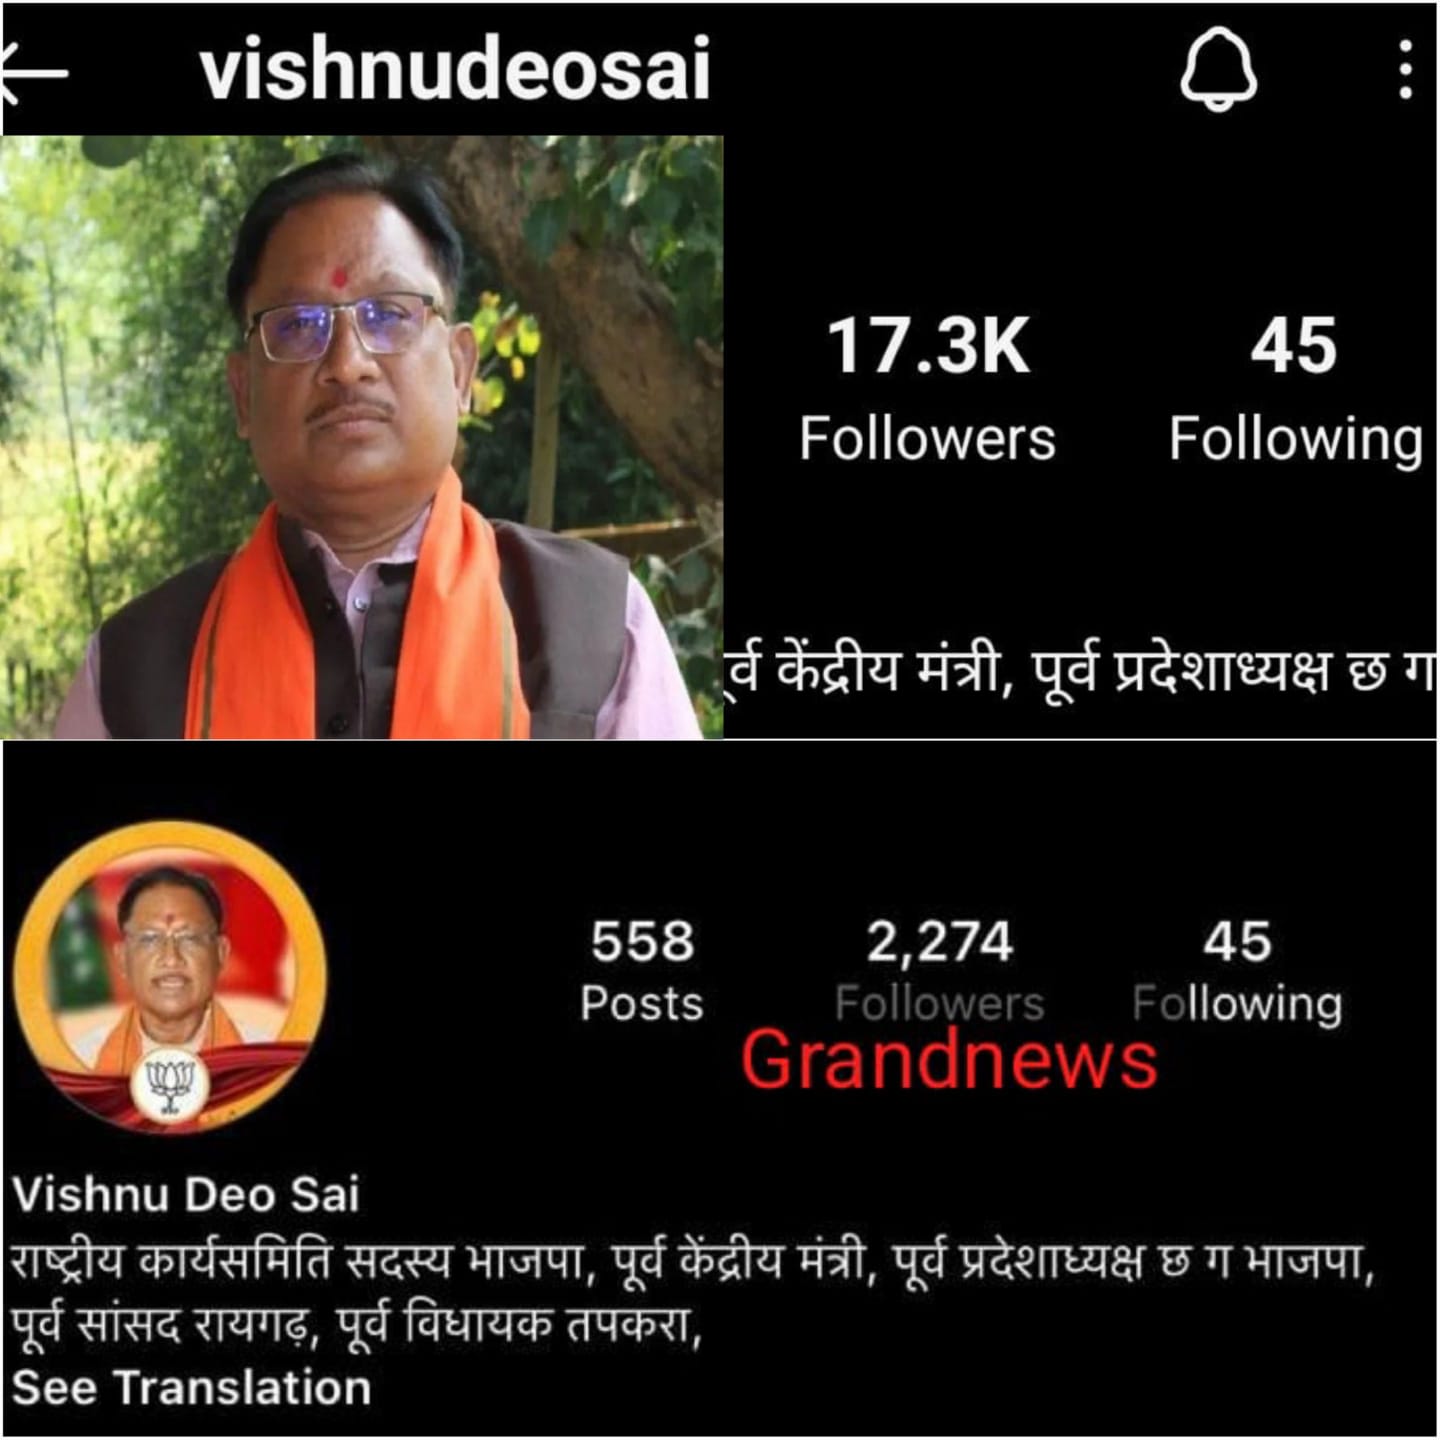 Chief Minister Vishnudev Sai : मुख्यमंत्री बनते ही इंस्टाग्राम में बढ़े विष्णुदेव साय के फॉलोअर्स, 2,250 से बढ़कर 24 घंटे में हुए 17 हजार से ज्यादा 